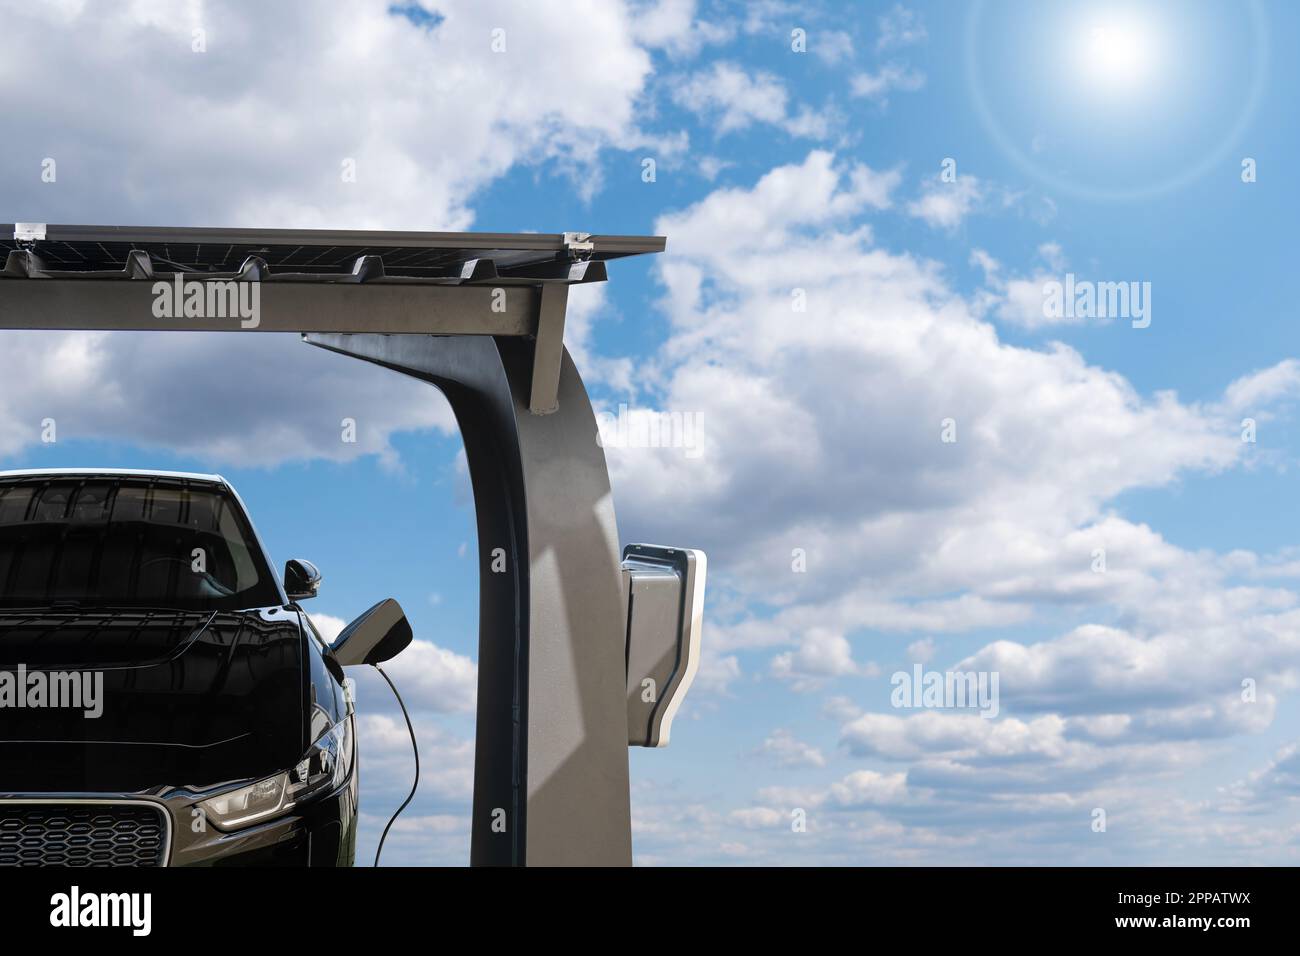 La voiture électrique est chargée à partir d'une station de charge qui prend l'énergie des panneaux solaires. Photo de haute qualité Banque D'Images